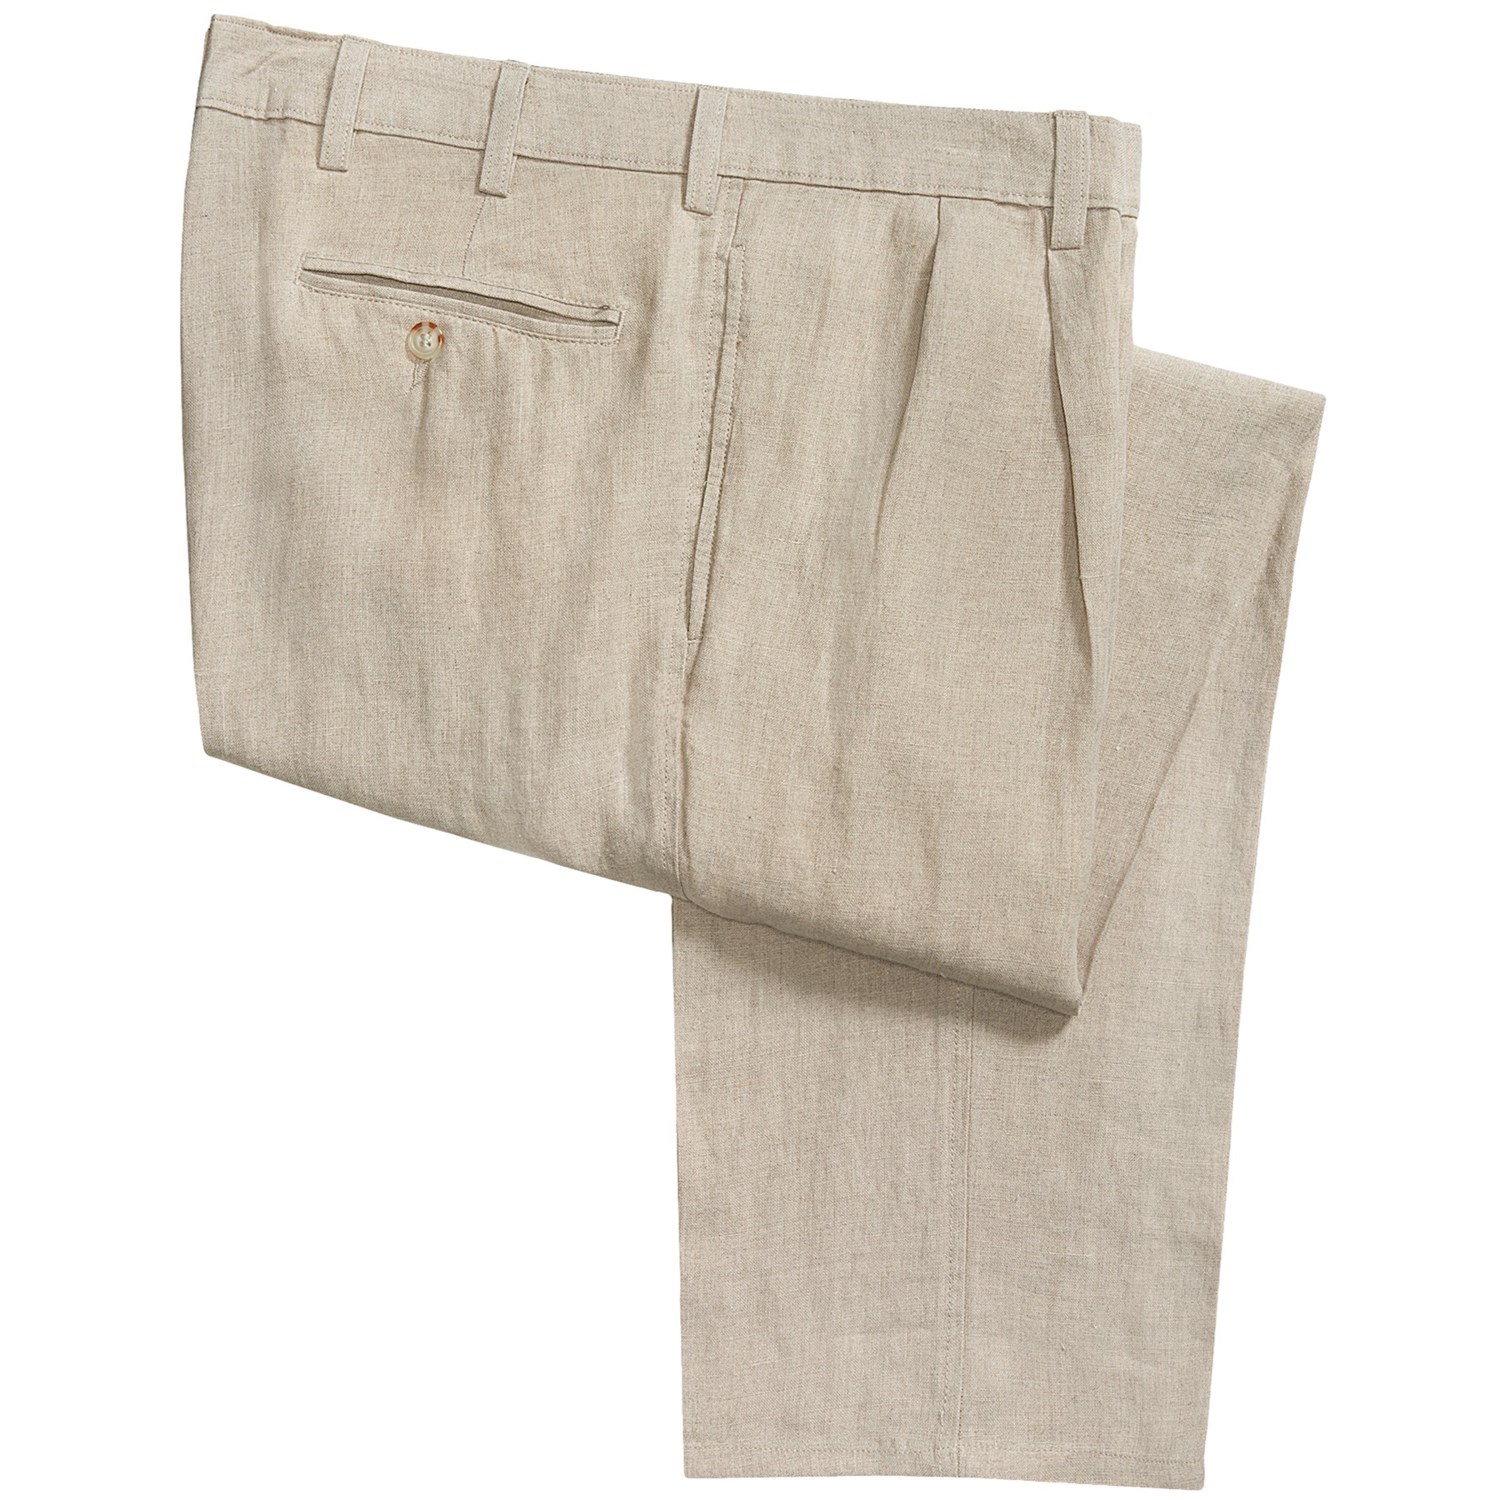 Vintage 1946 Linen Pants (For Men) 5562N - Save 77%